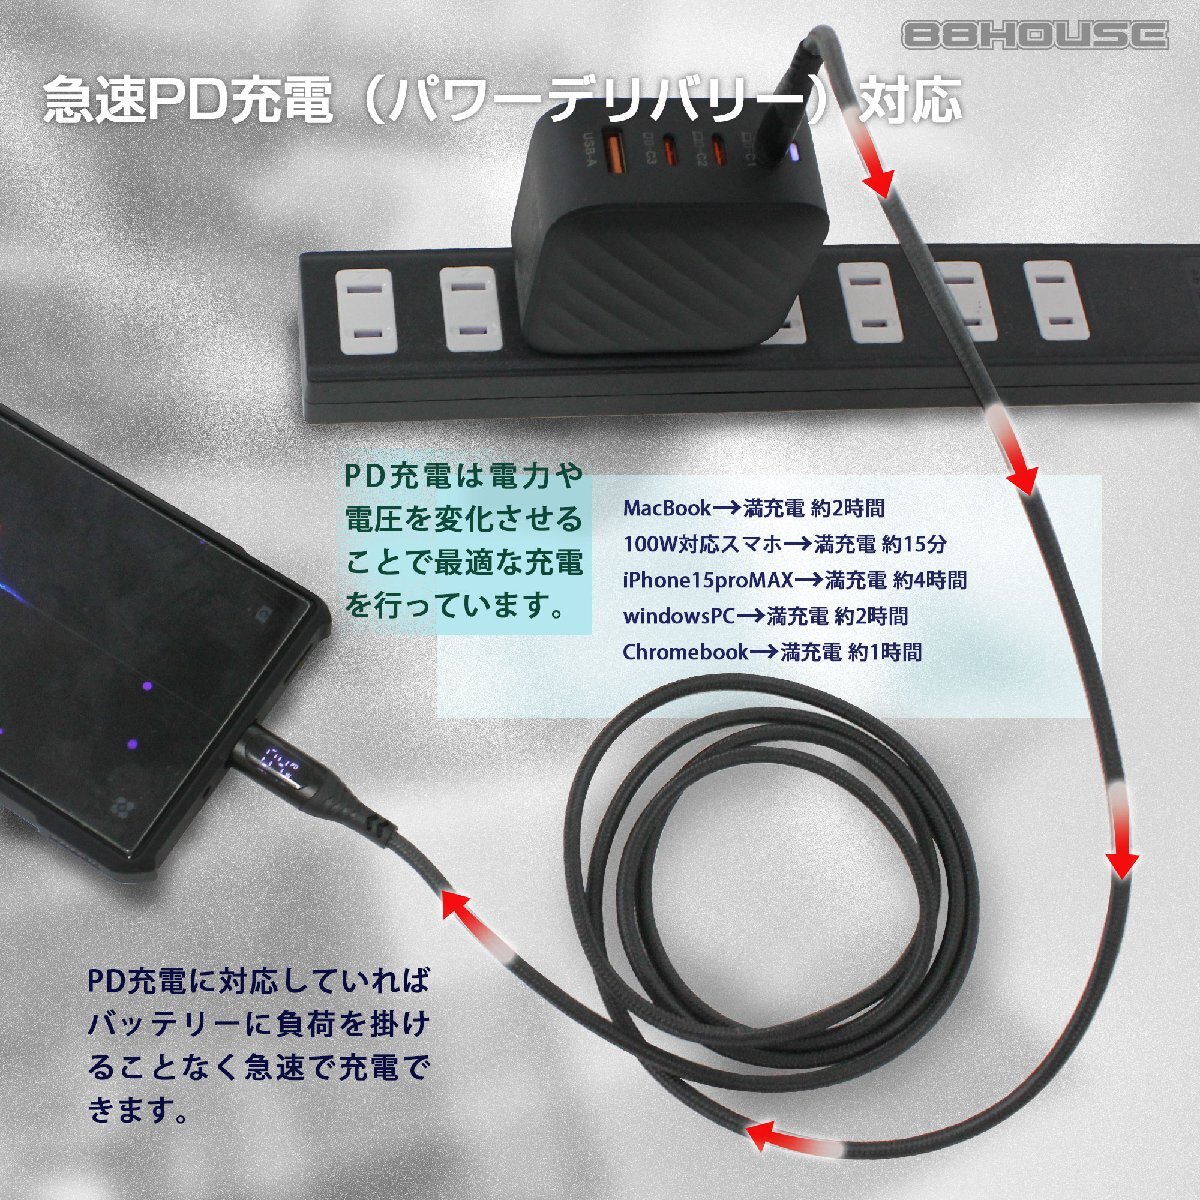 [ 1.5m черный ] зарядное устройство кабель комплект C-Type ITO PD 100W QC внезапный скорость зарядка GaN USB 100W 4 порт зарядка кабель модель C eMarker